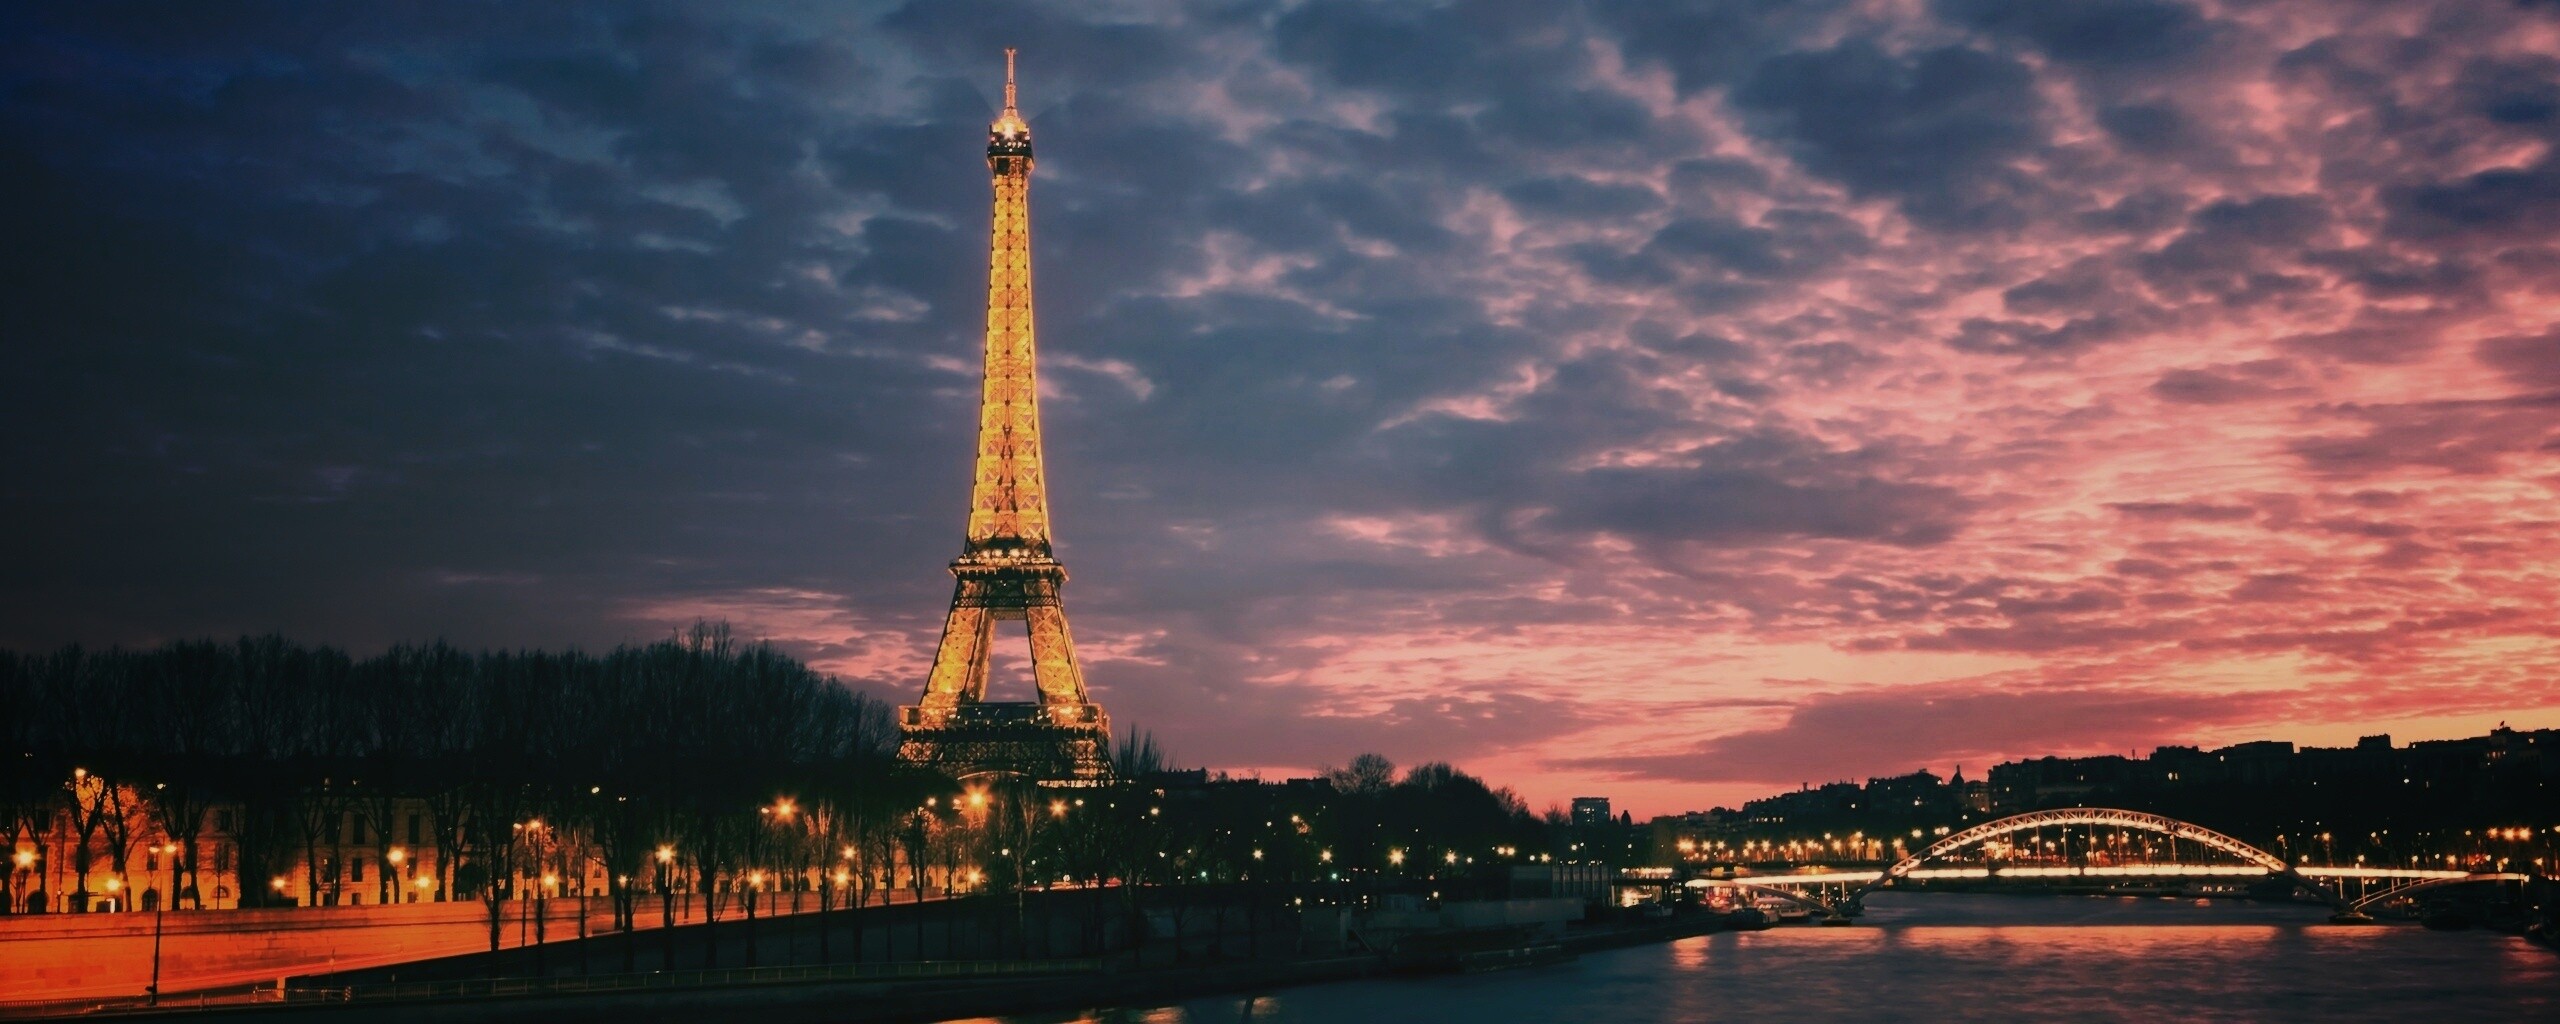 Эйфелева башня в Париже скачать